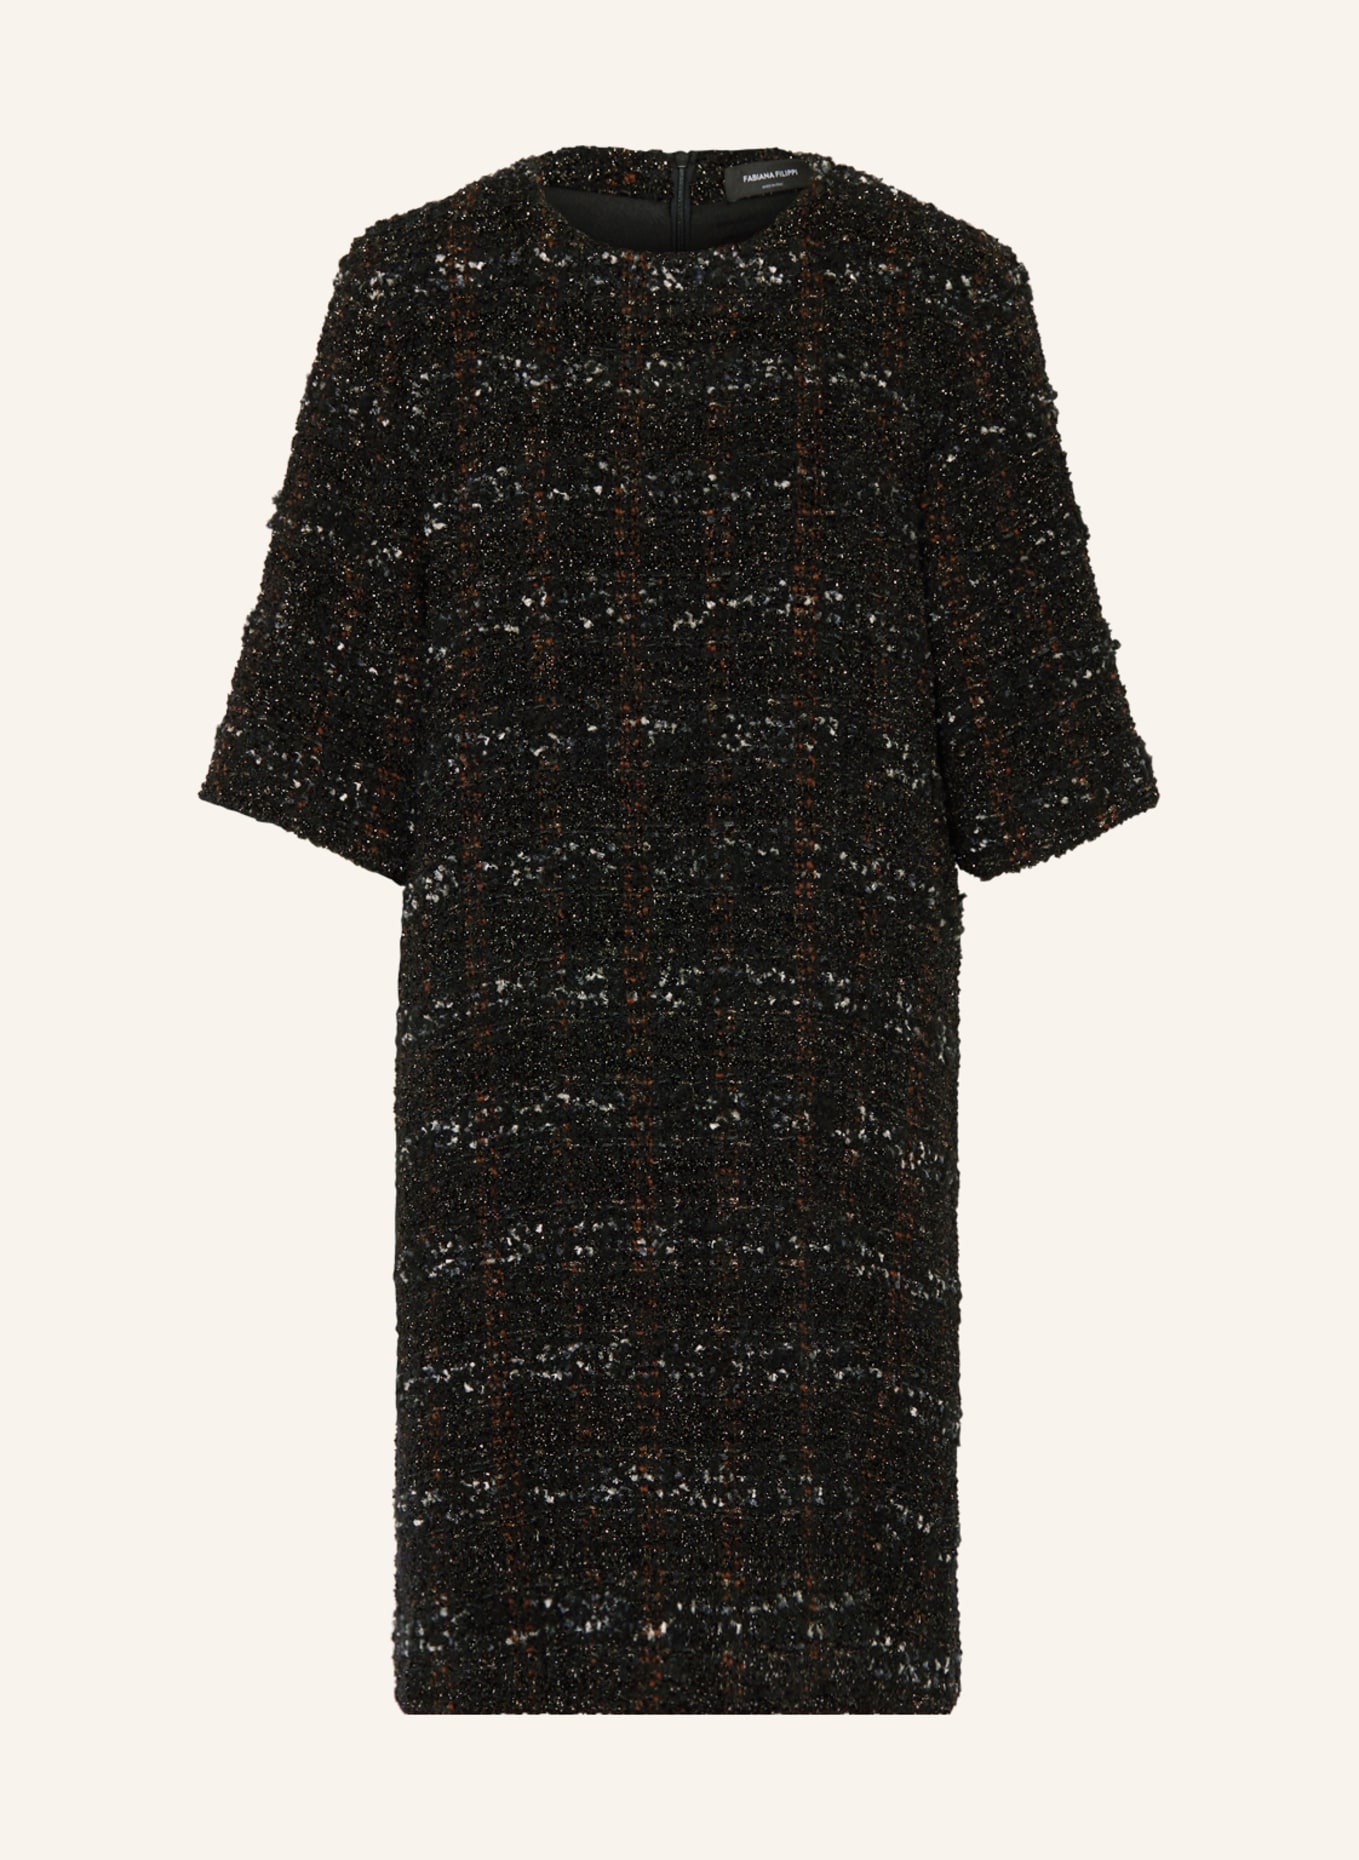 FABIANA FILIPPI Tweed-Kleid mit Glanzgarn, Farbe: SCHWARZ/ WEISS/ GOLD (Bild 1)